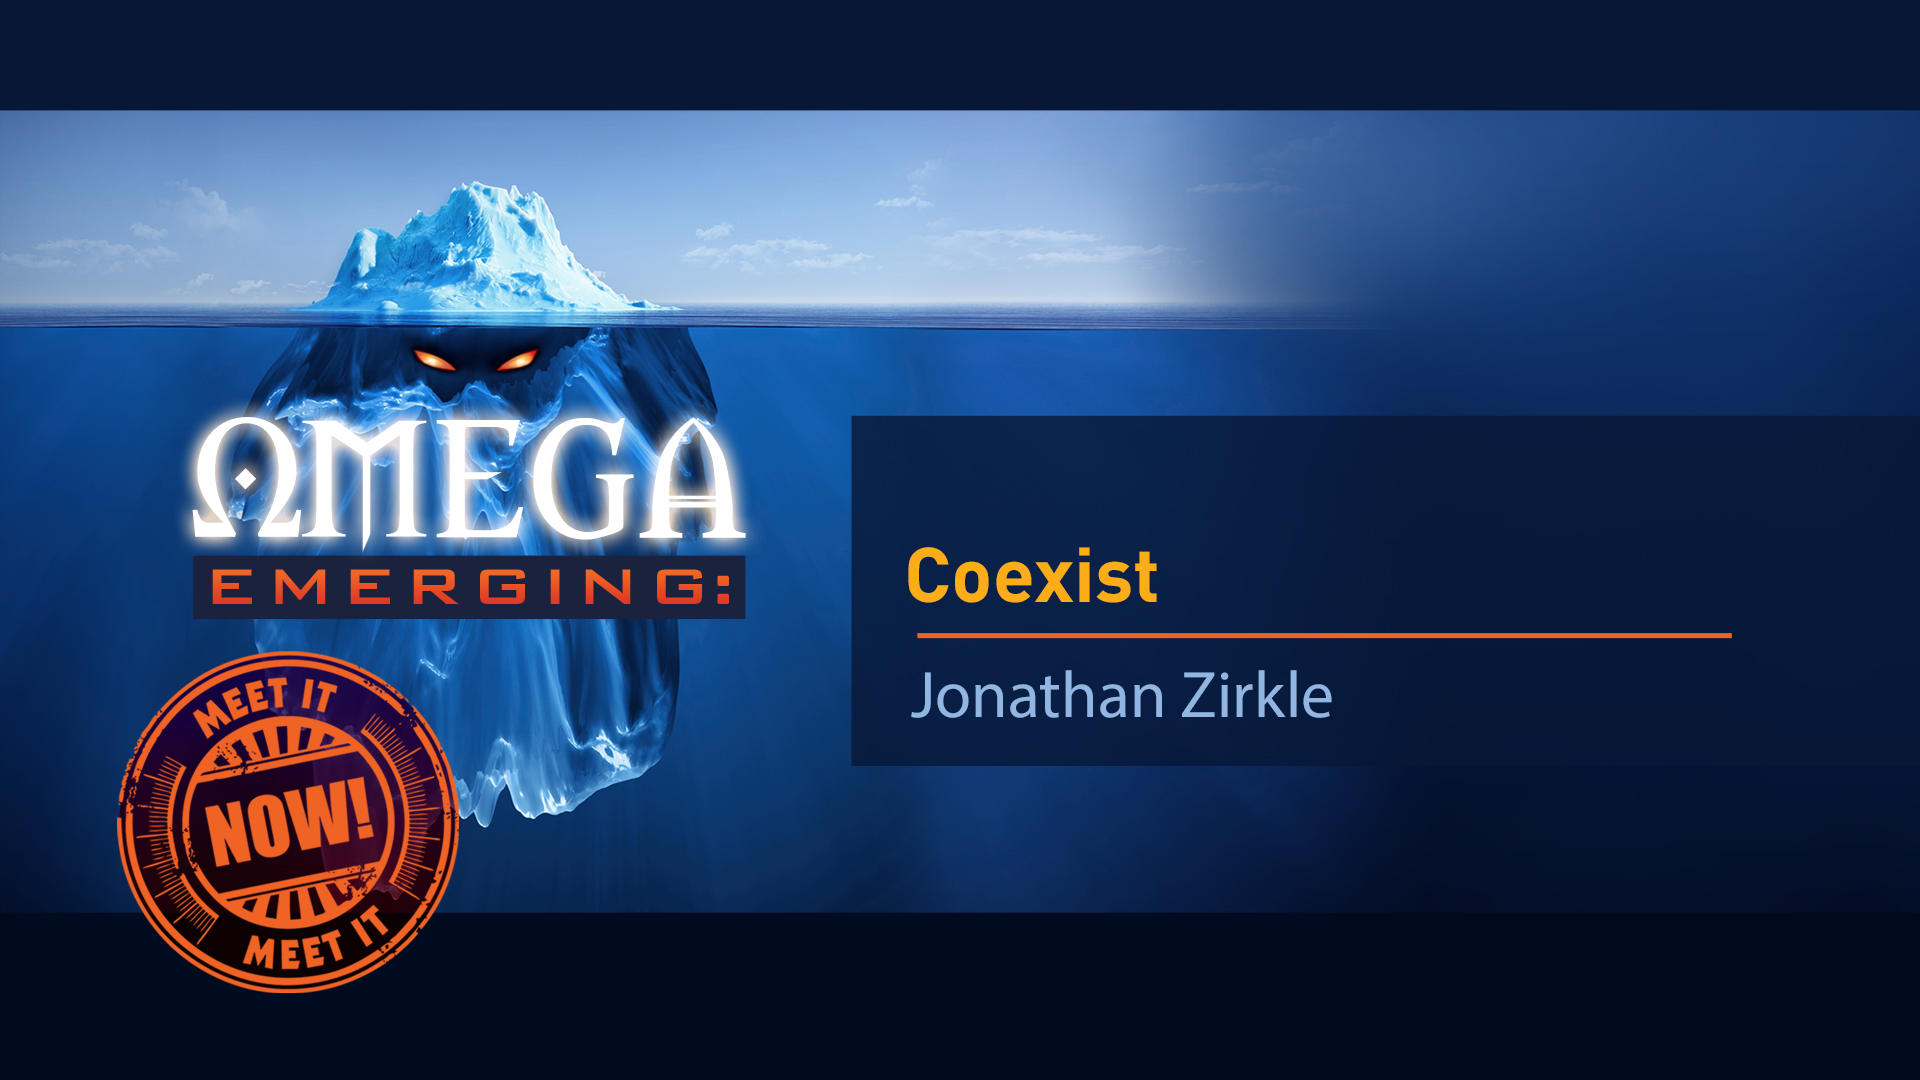 1. Coexist - Jonathan Zirkle